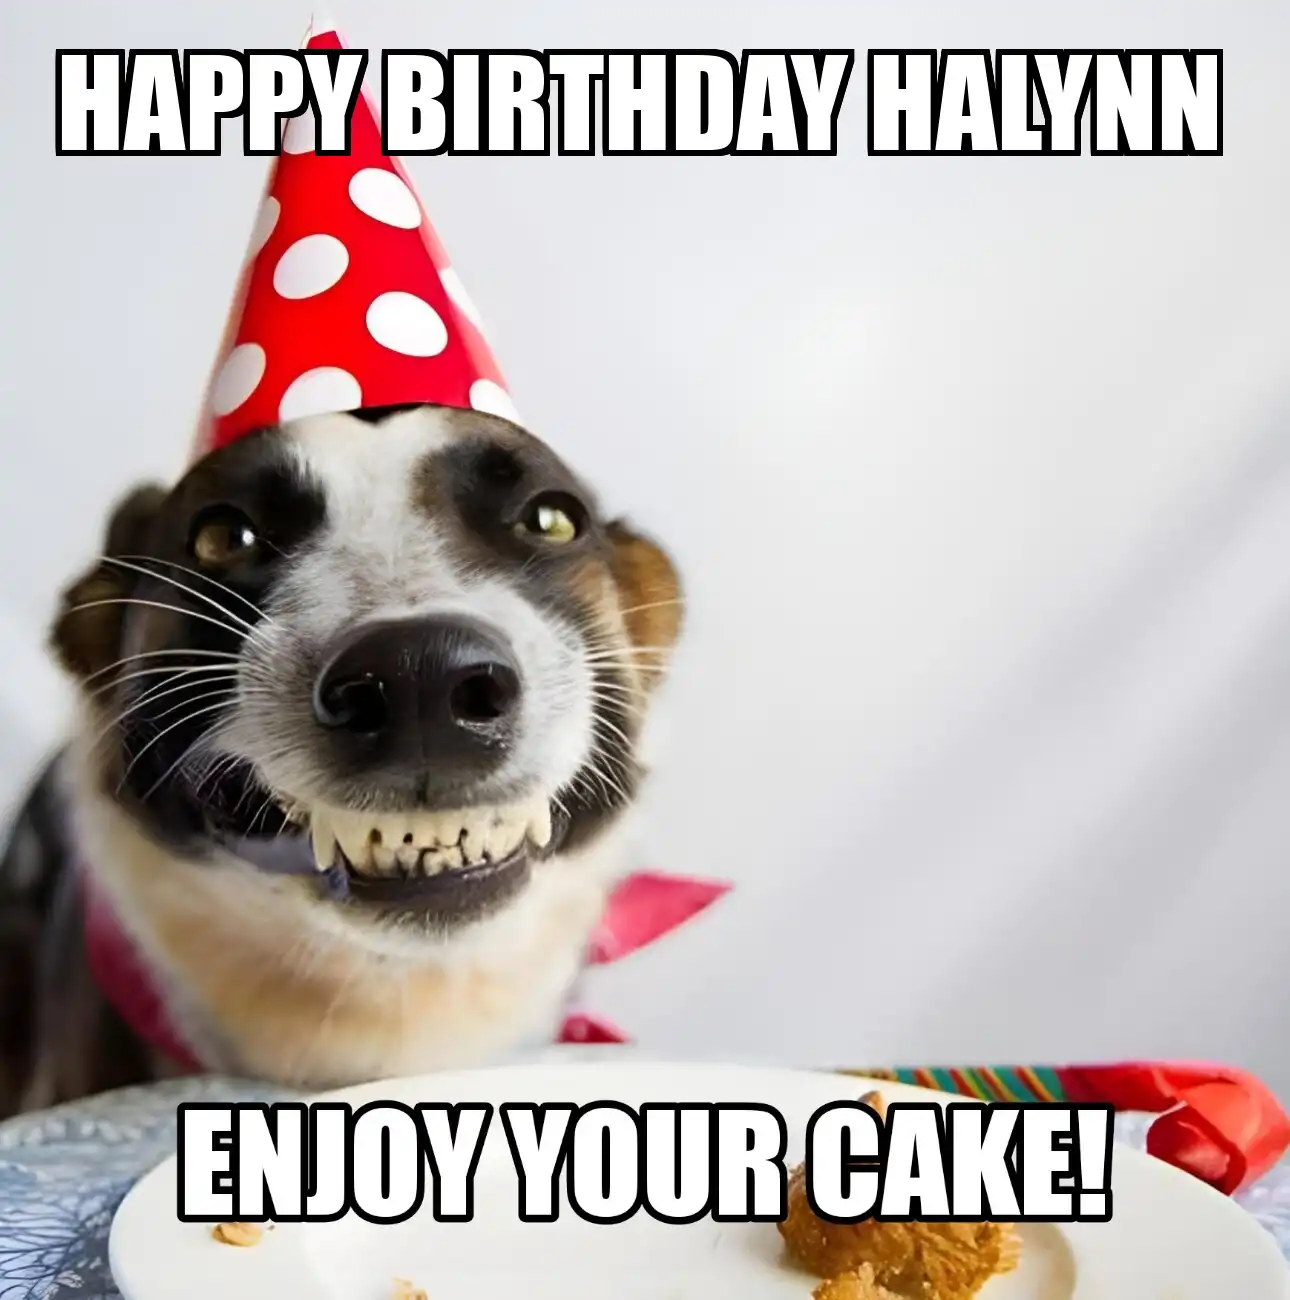 Happy Birthday Halynn Enjoy Your Cake Dog Meme